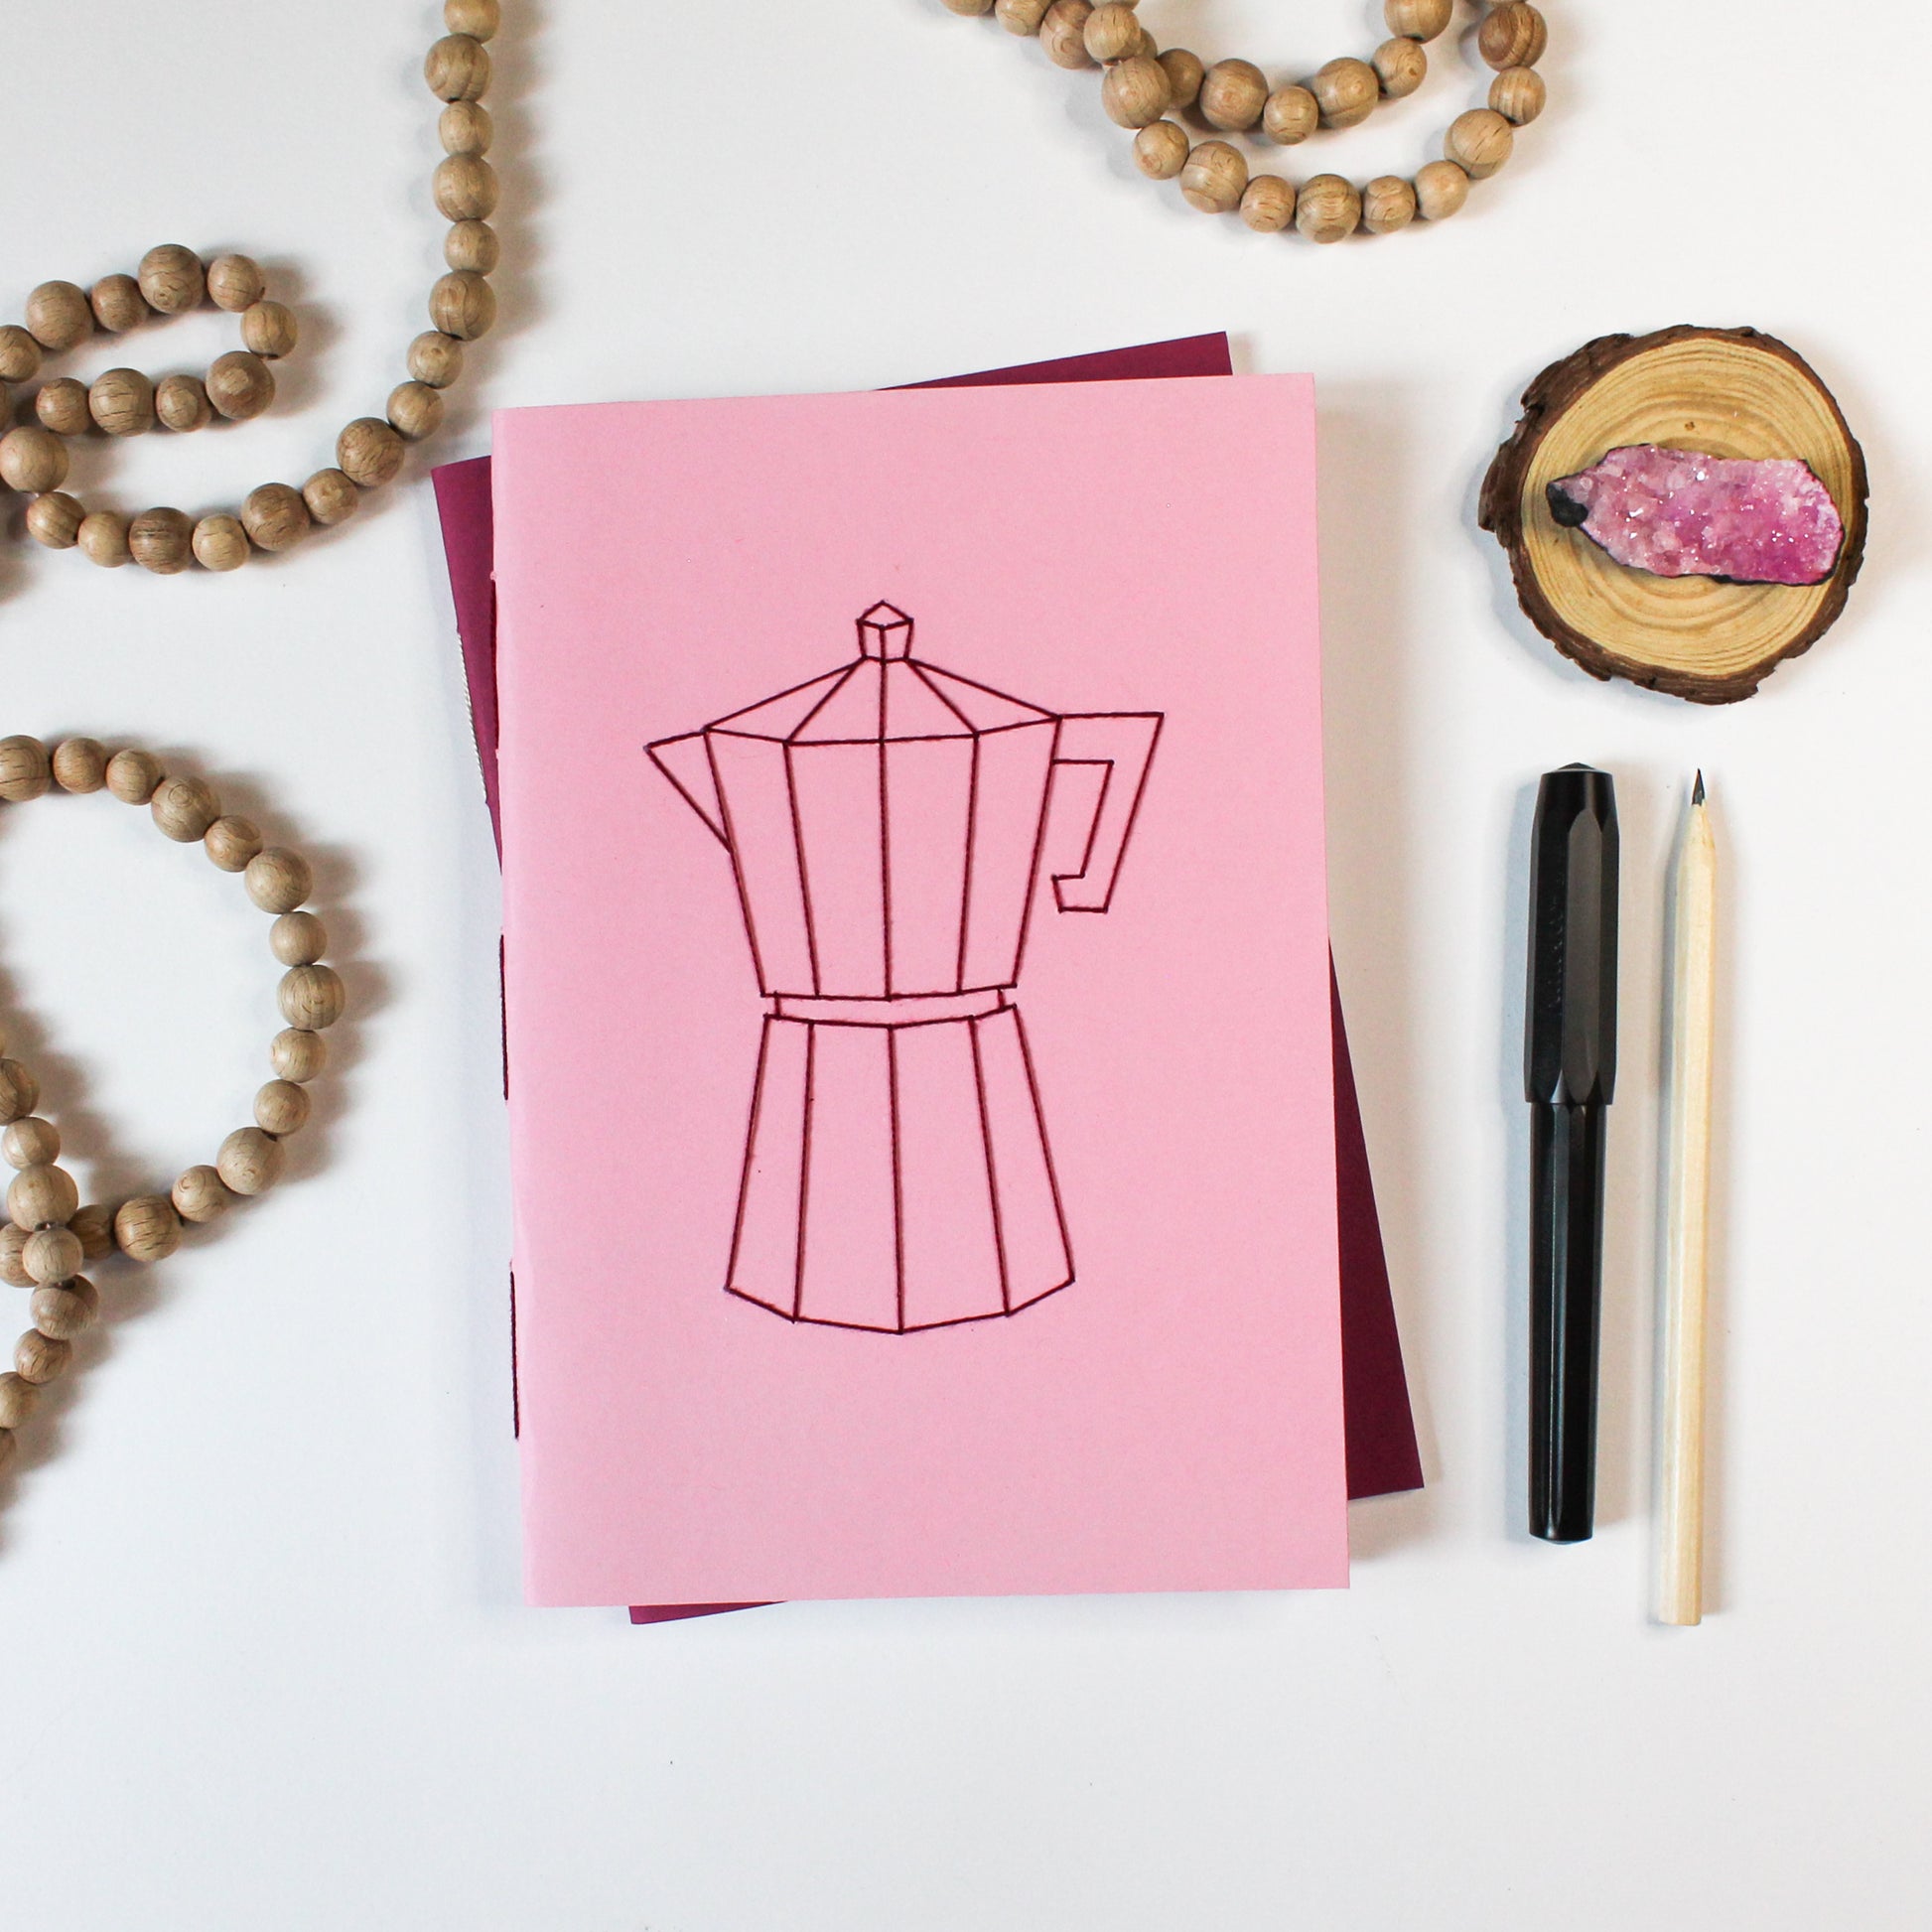 A/5-ös jegyzetfüzet, napló, kézműves, kotyogós kávéfőző minta, kávé minta, rózsaszín, sima vagy pontrácsos kivitelben